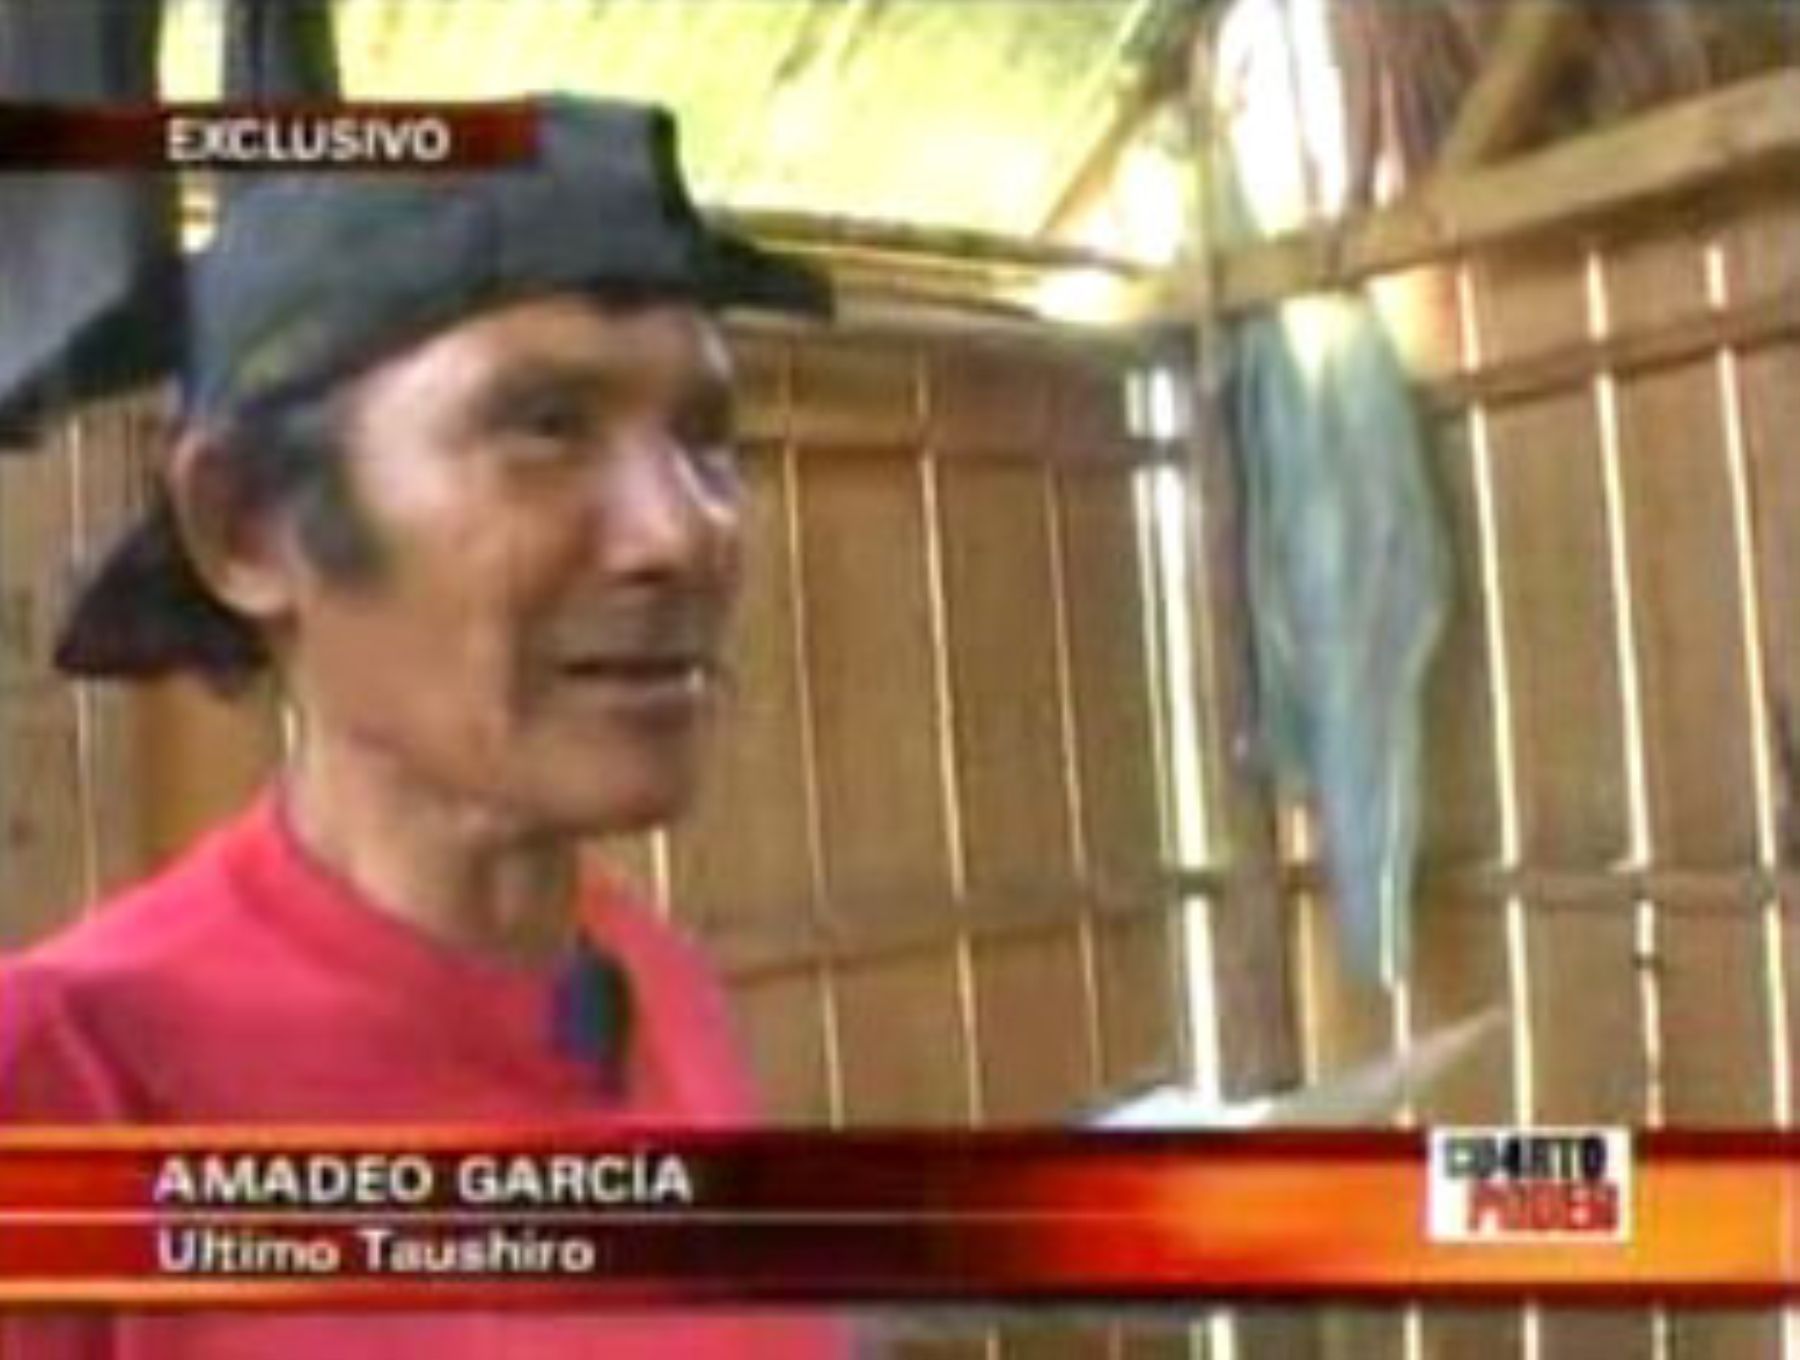 Ultimo taushiro peruano, Amadeo García. Foto: Andina/Captura TV